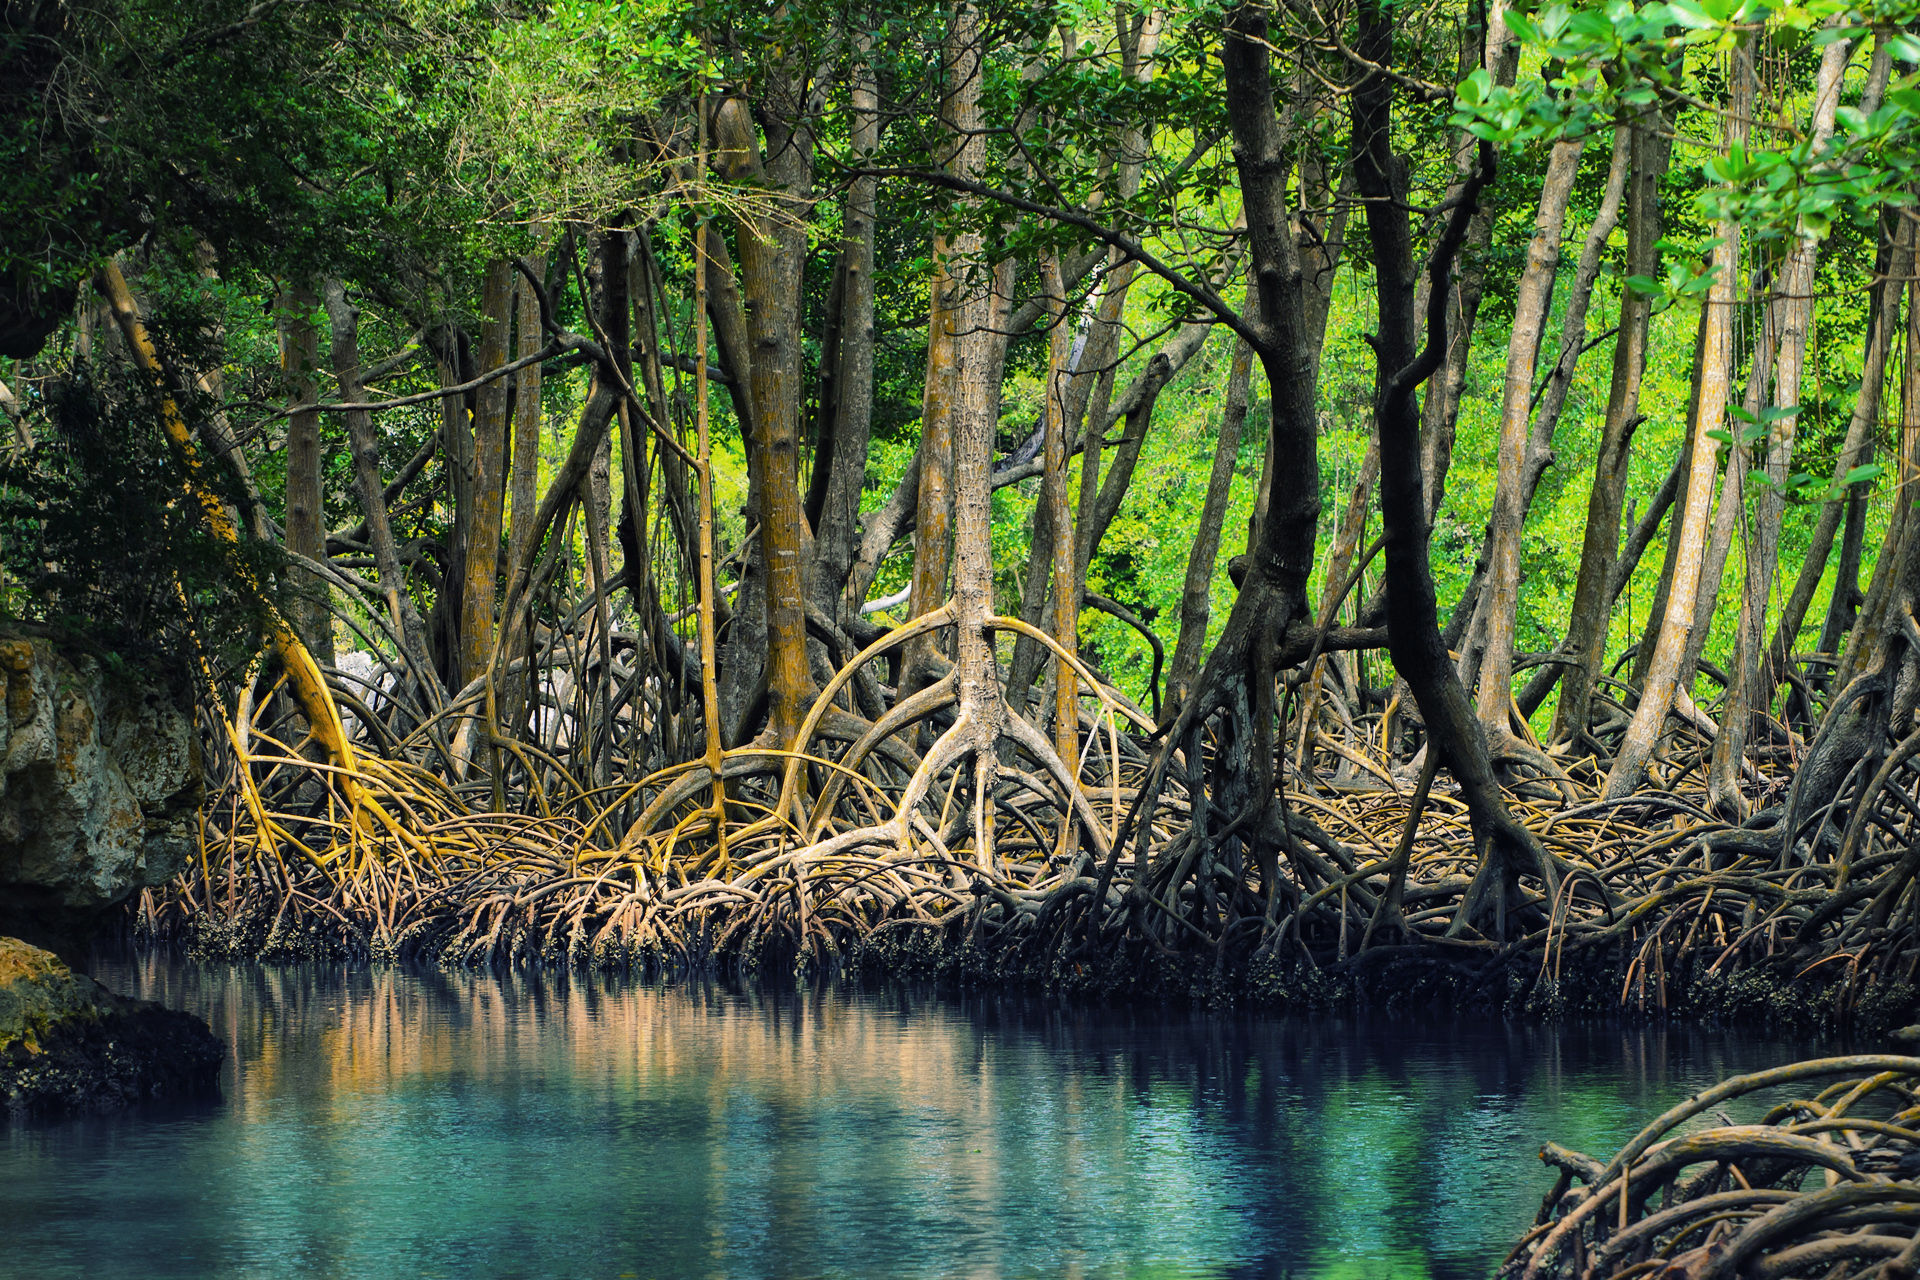 Lunar cycle makes mangroves flourish